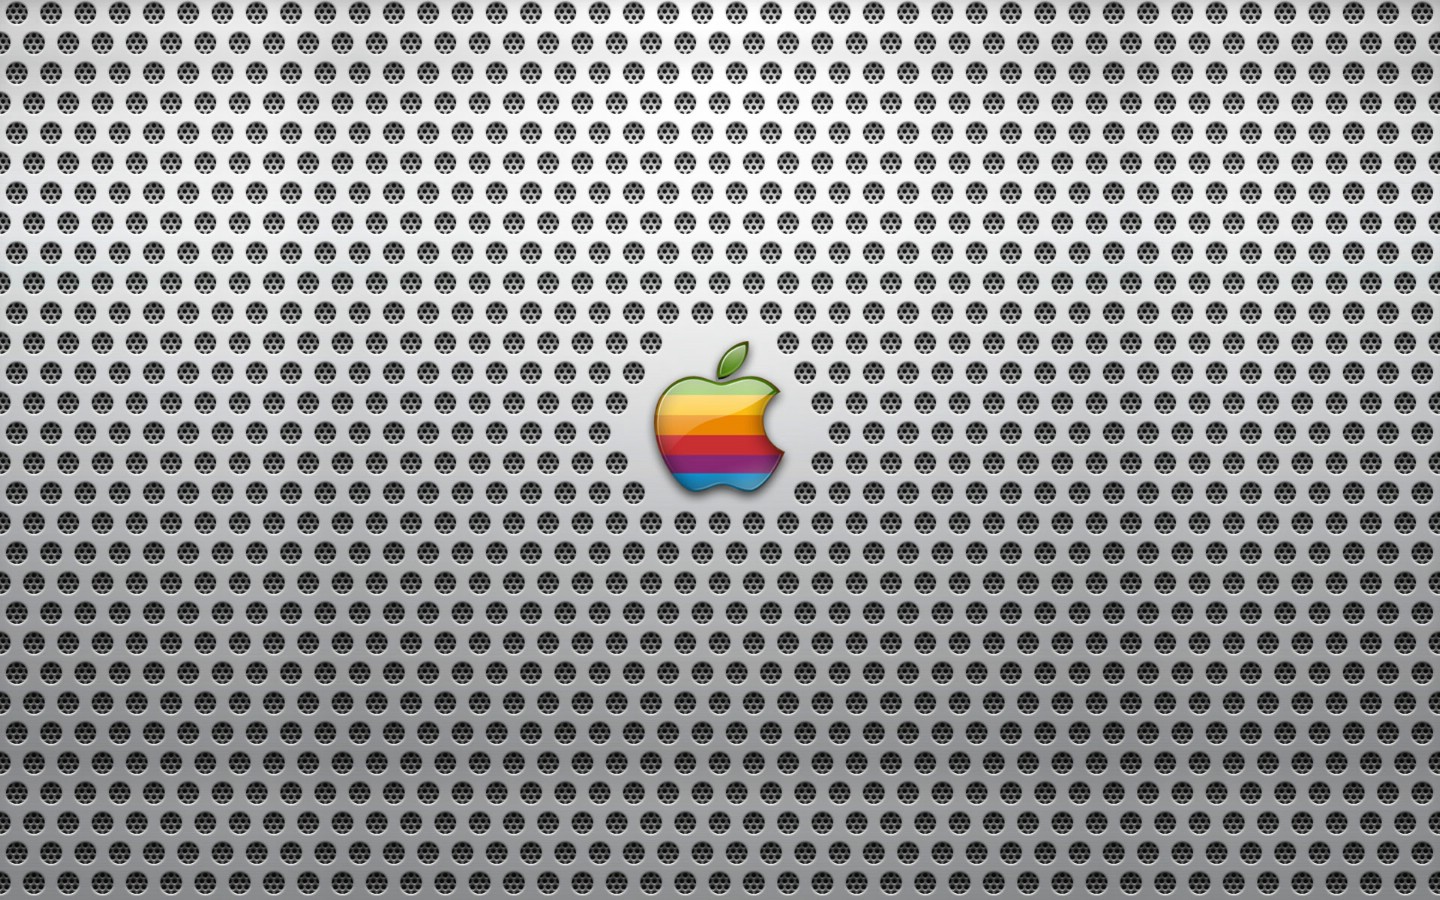 壁纸1440x900Apple主题壁纸壁纸 Apple主题壁纸壁纸 Apple主题壁纸图片 Apple主题壁纸素材 其他壁纸 其他图库 其他图片素材桌面壁纸